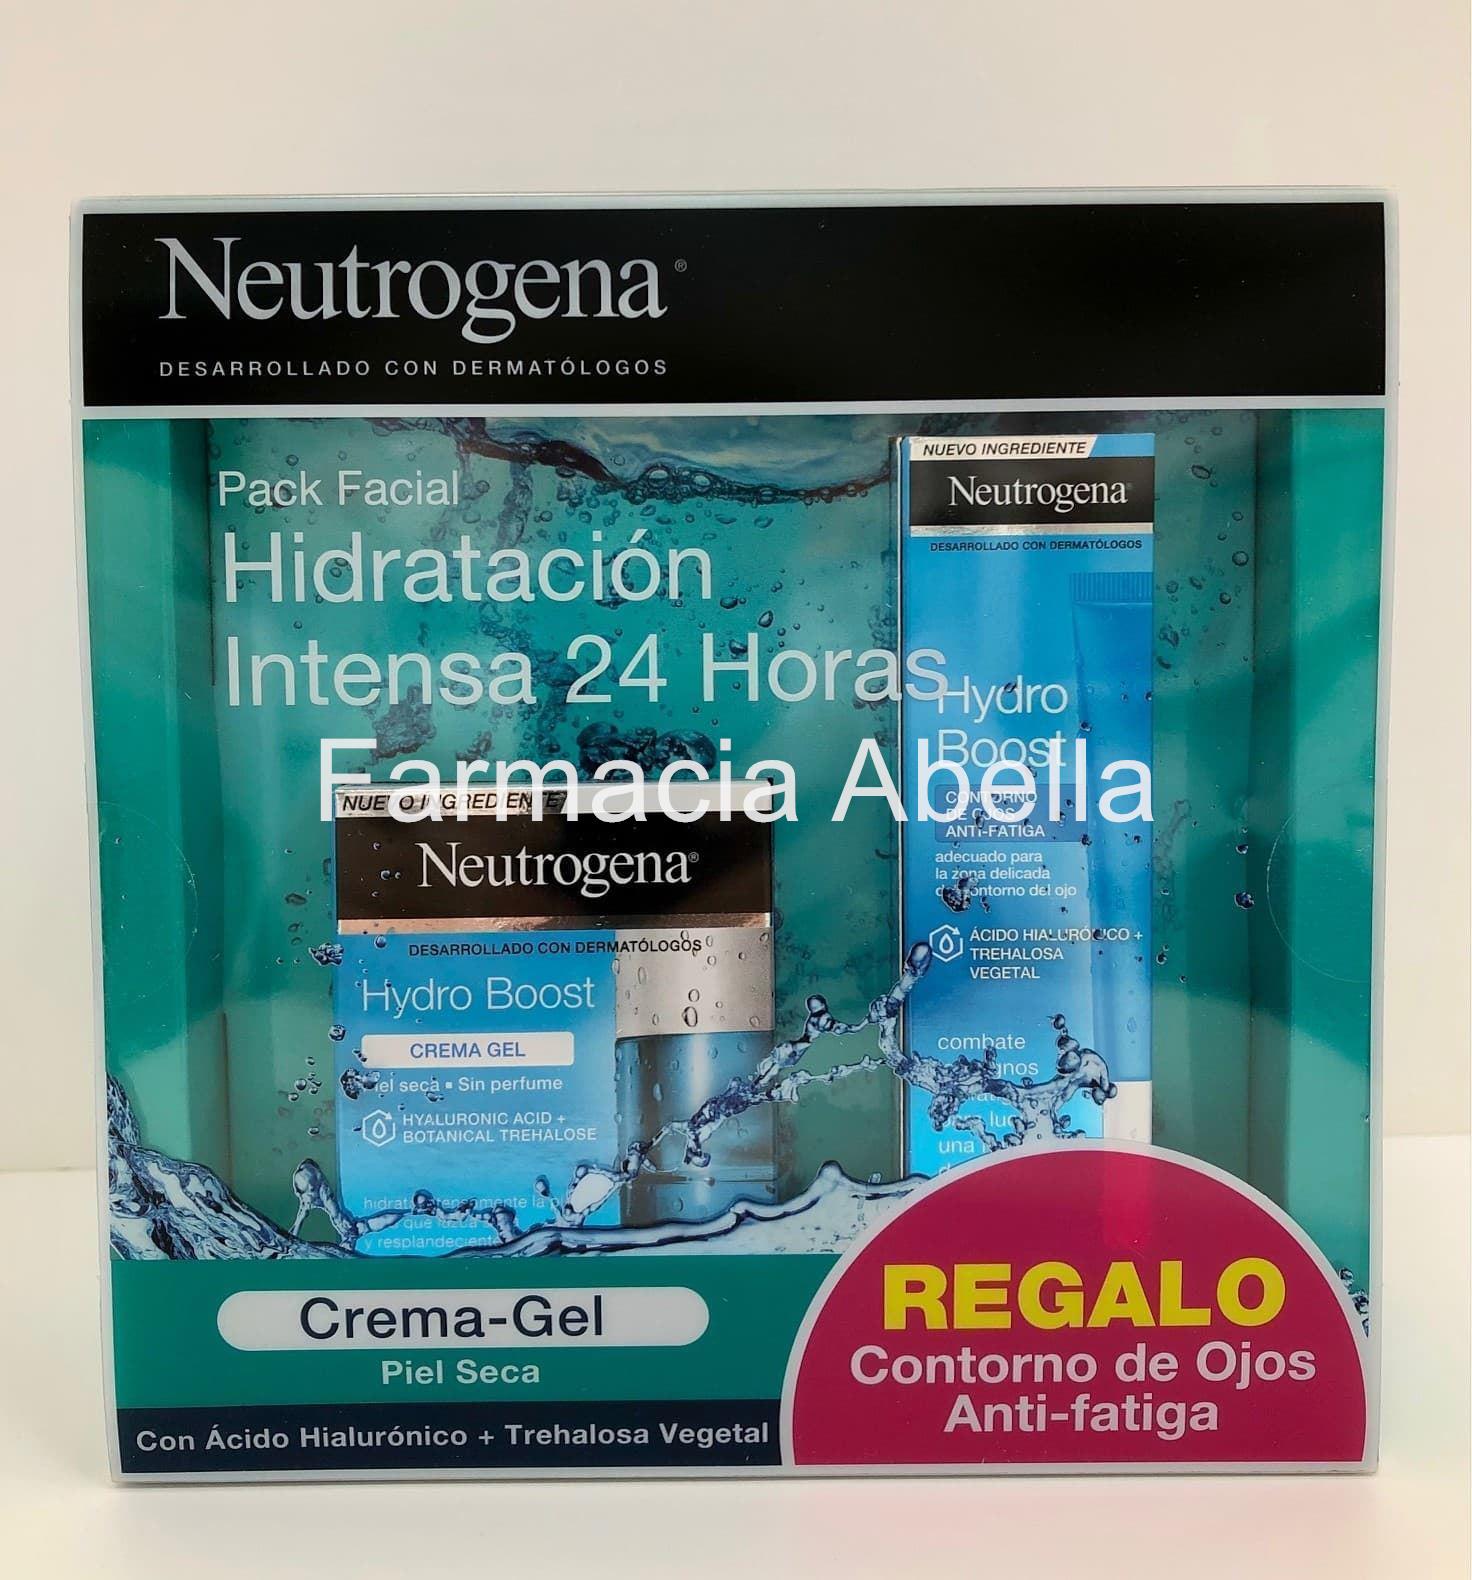 Neutrogena hydro boost crema gel 50 ml+ contorno de ojos crema anti- fatiga de regalo - Imagen 2